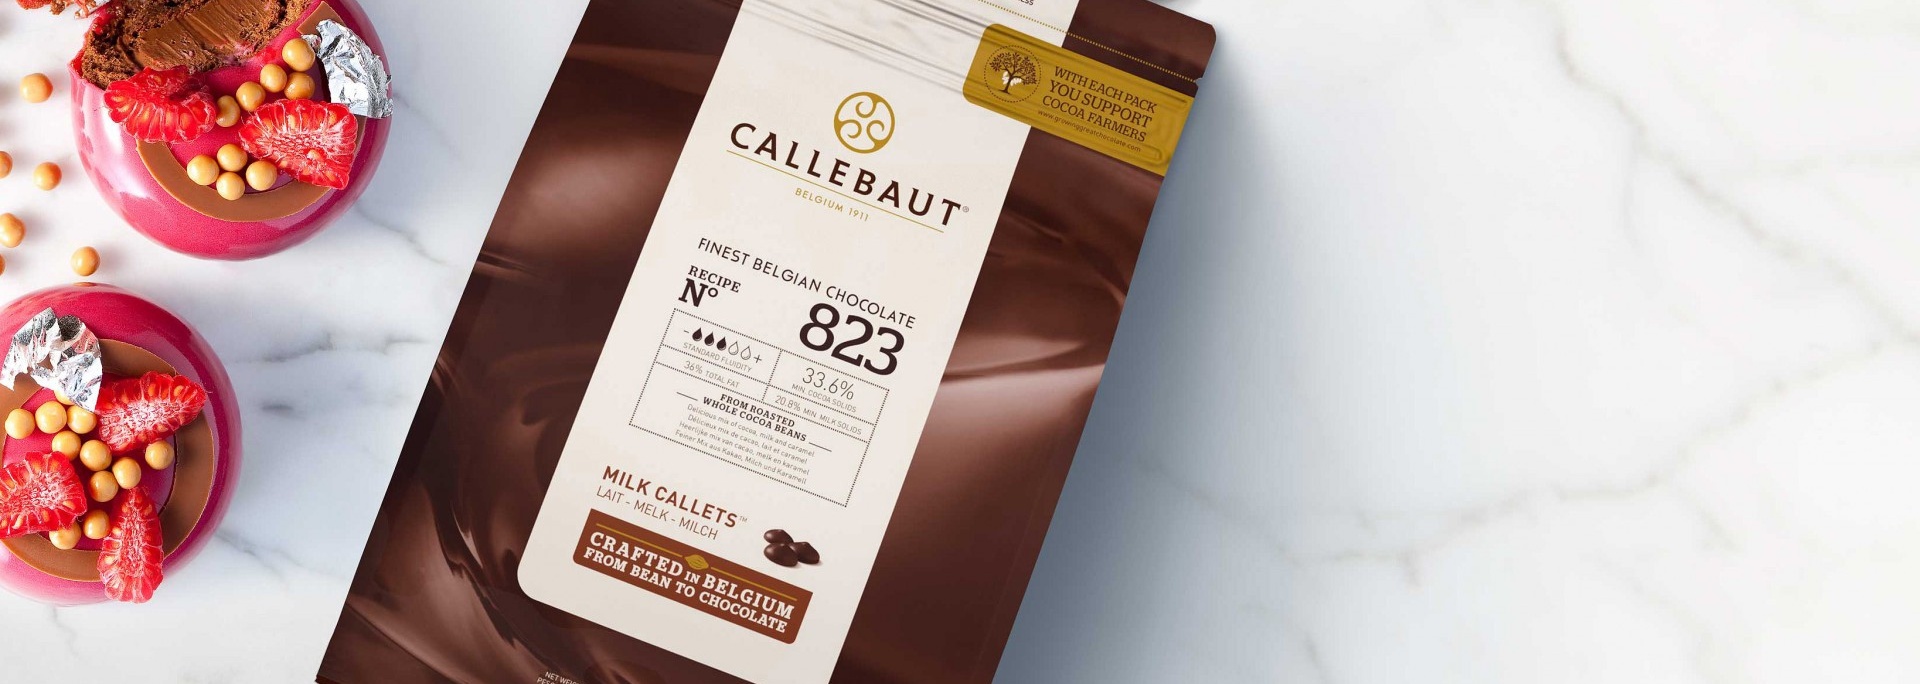 Duo - Callebaut - Enterprise solution